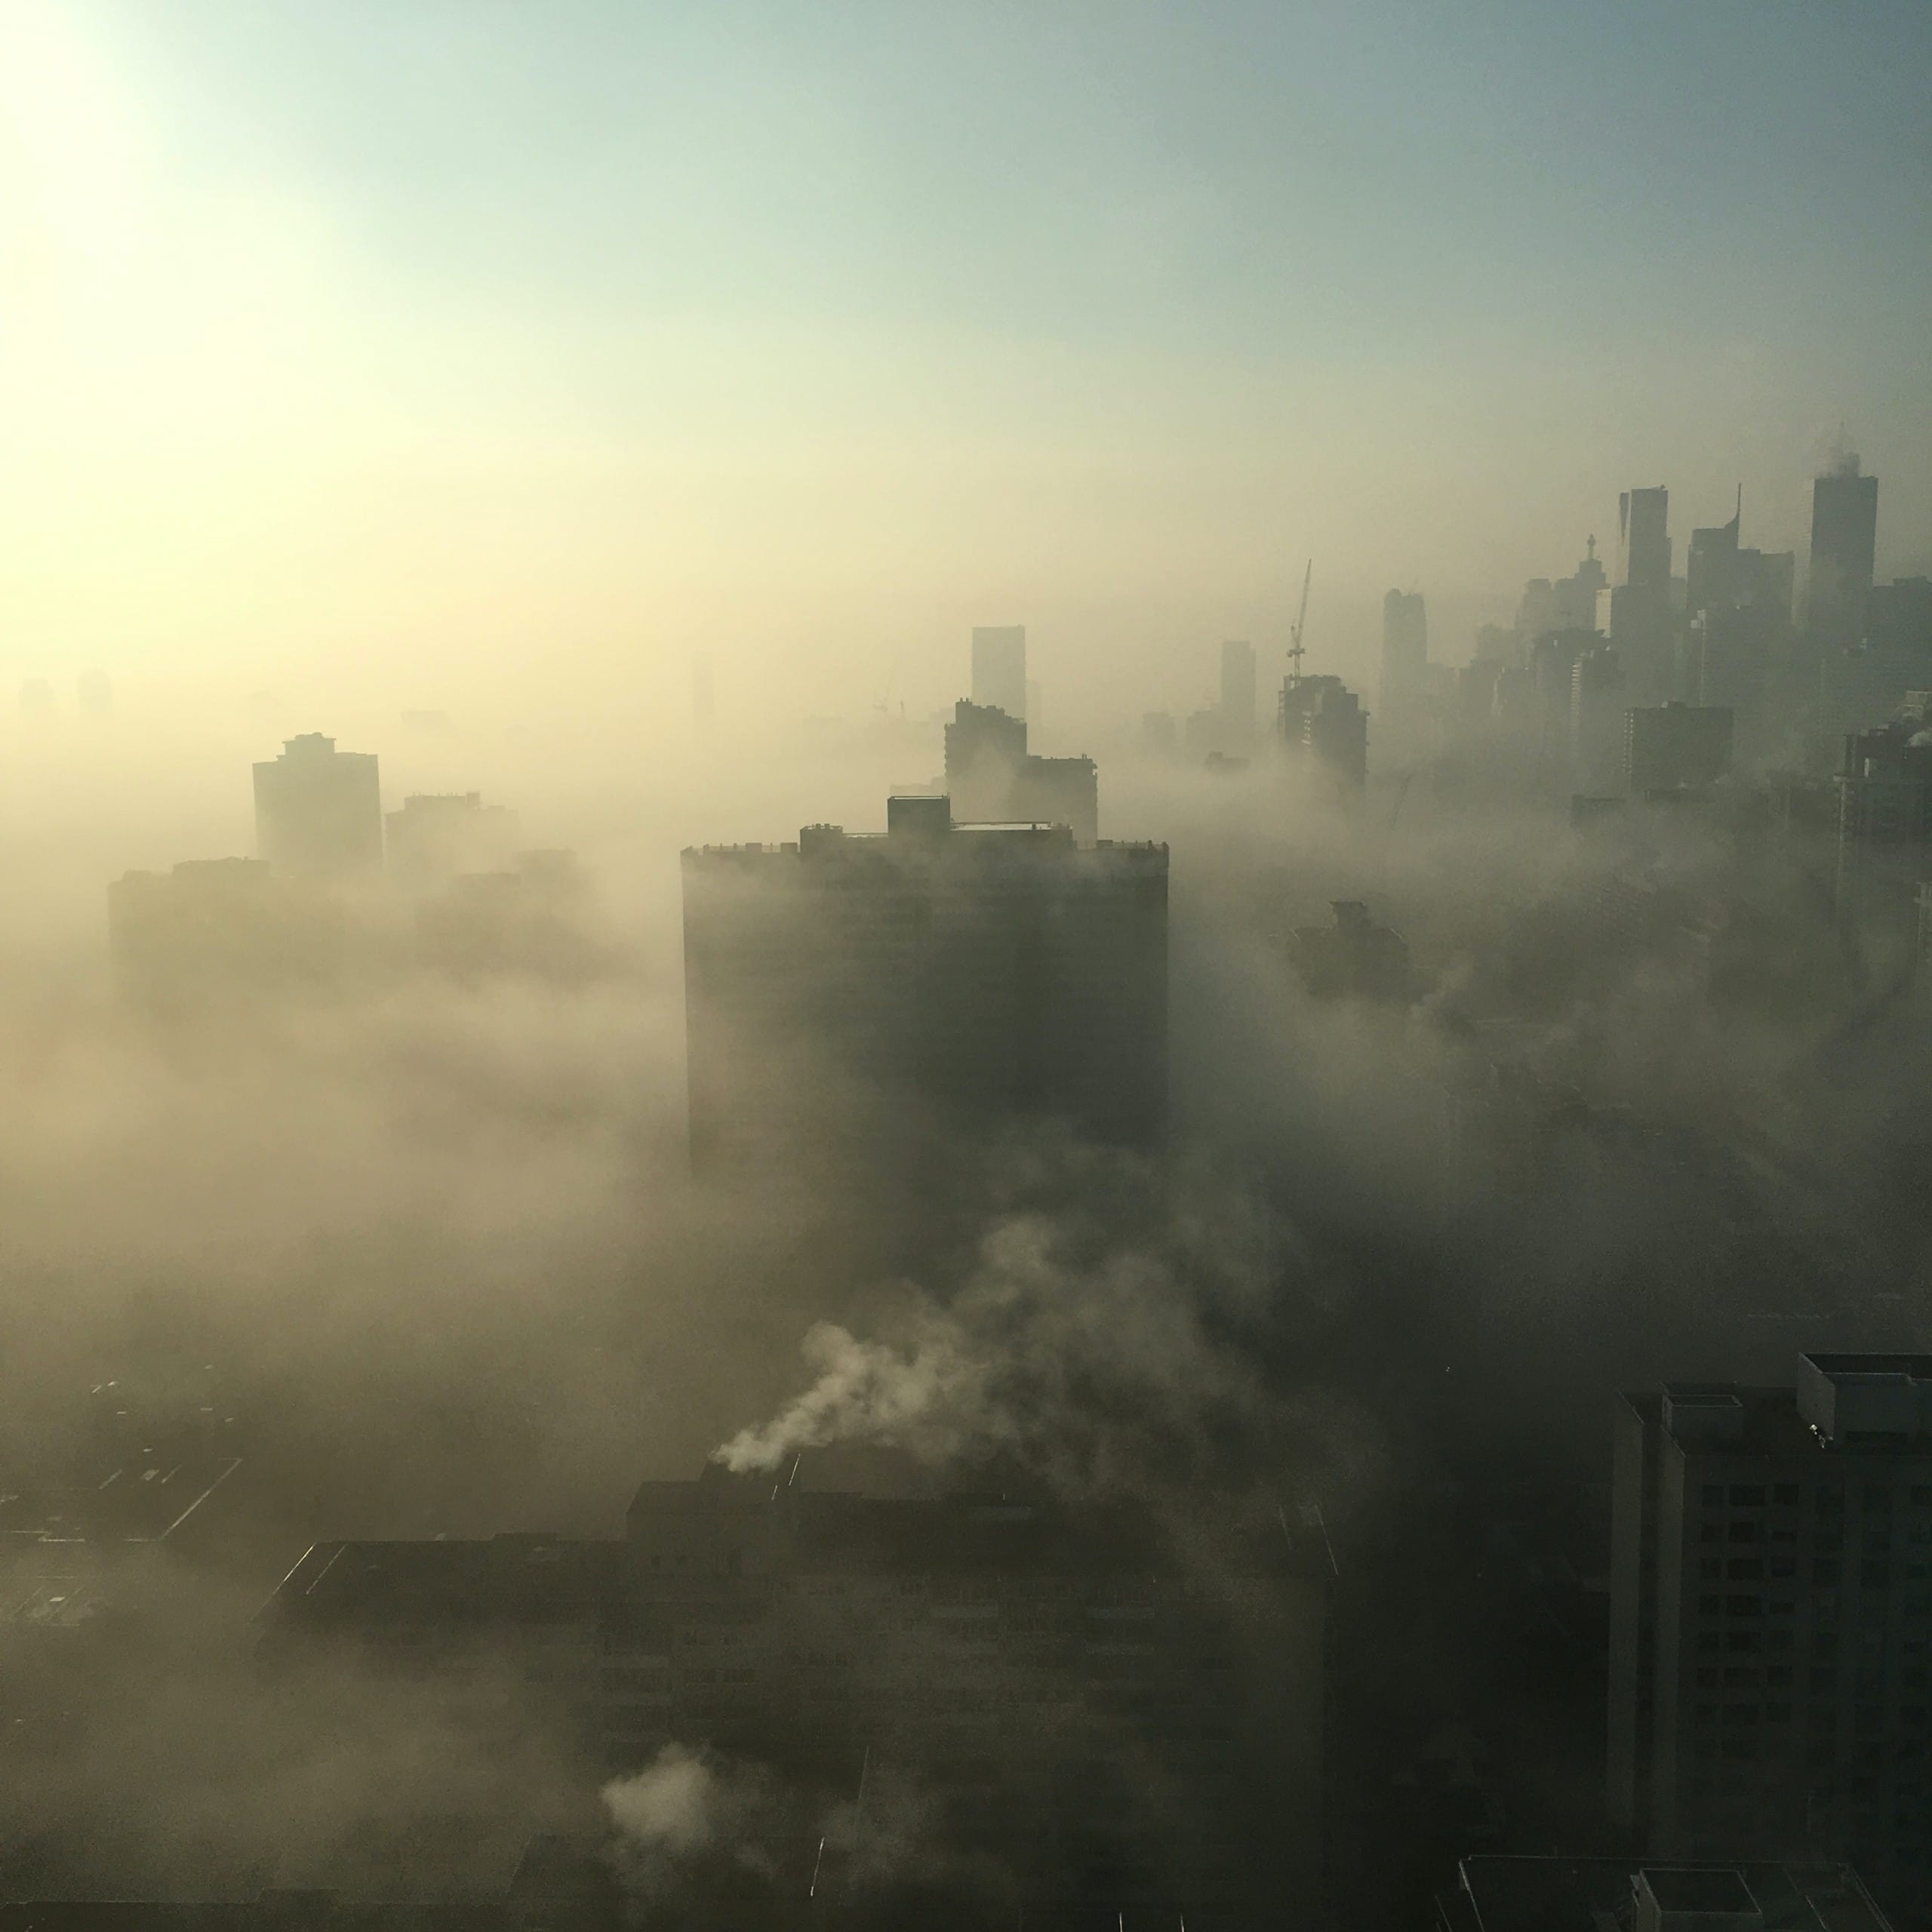 Luftverschmutzung in Städten kann aussehen wie Smog, ist oft aber auch unsichtbar. Bildquelle: Unsplash